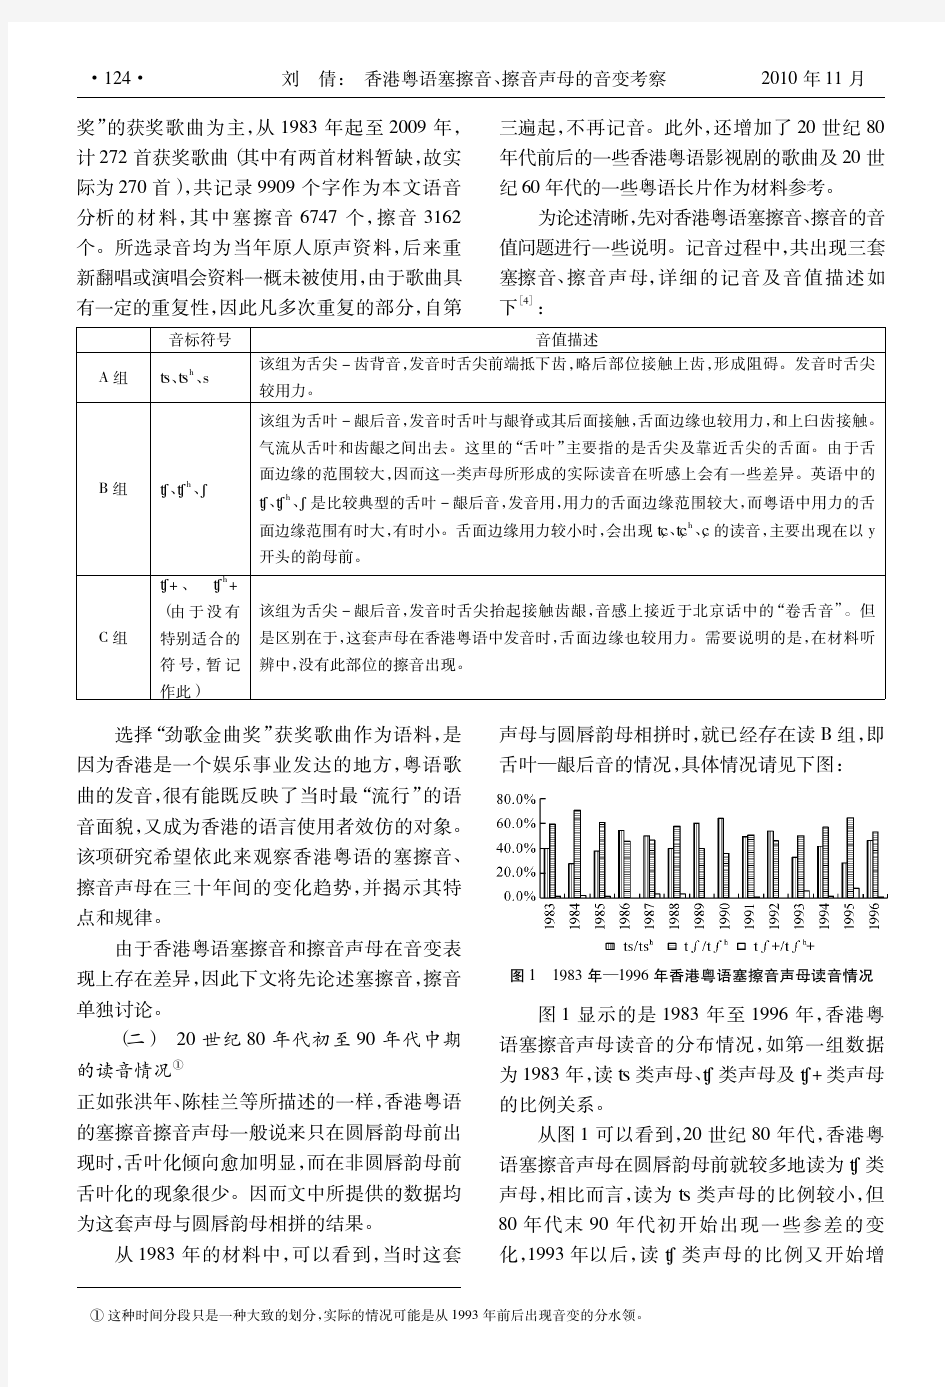 香港粤语塞擦音、擦音声母的音变考察——以三十年来香港粤语歌词为例